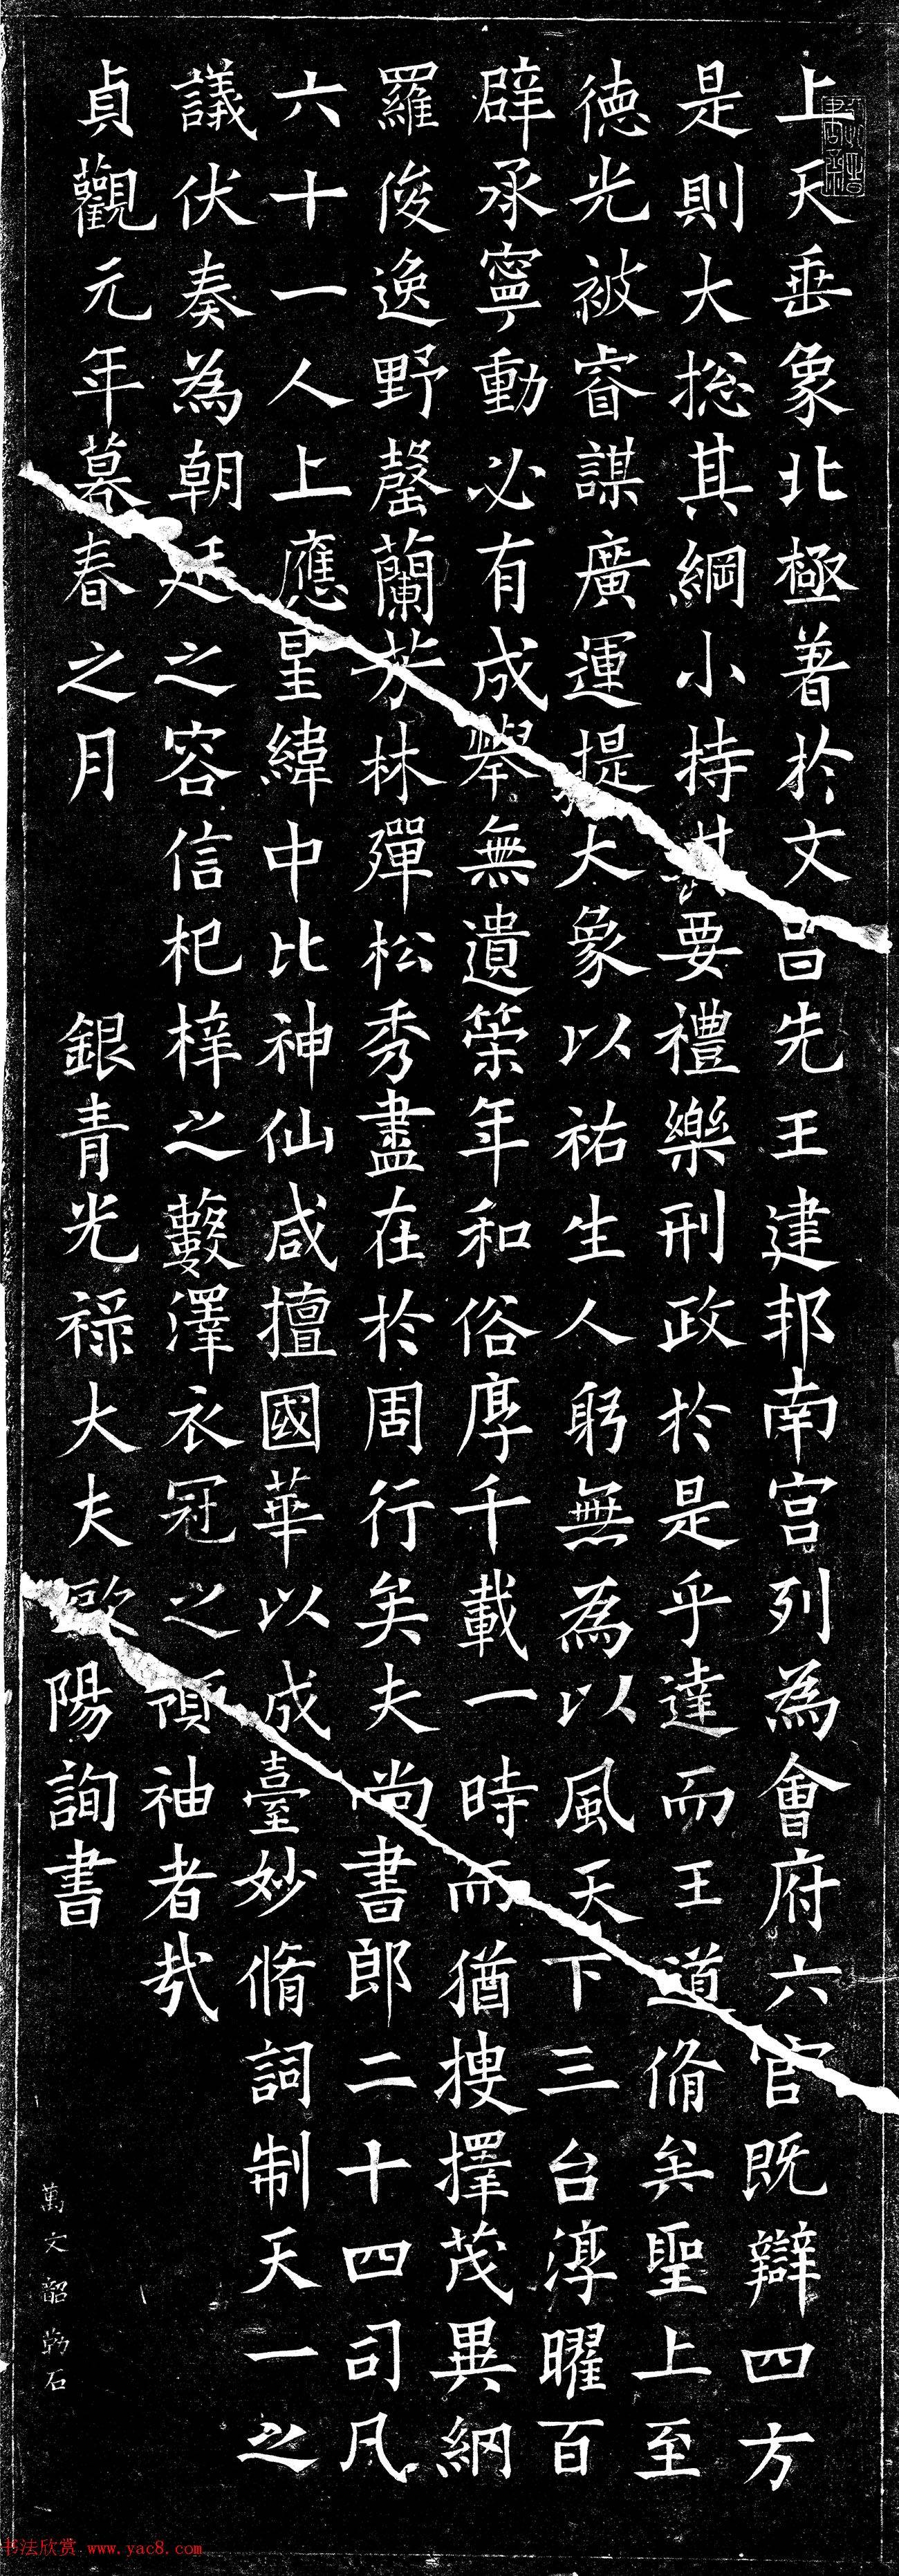 为什么中国书法能够成为艺术？